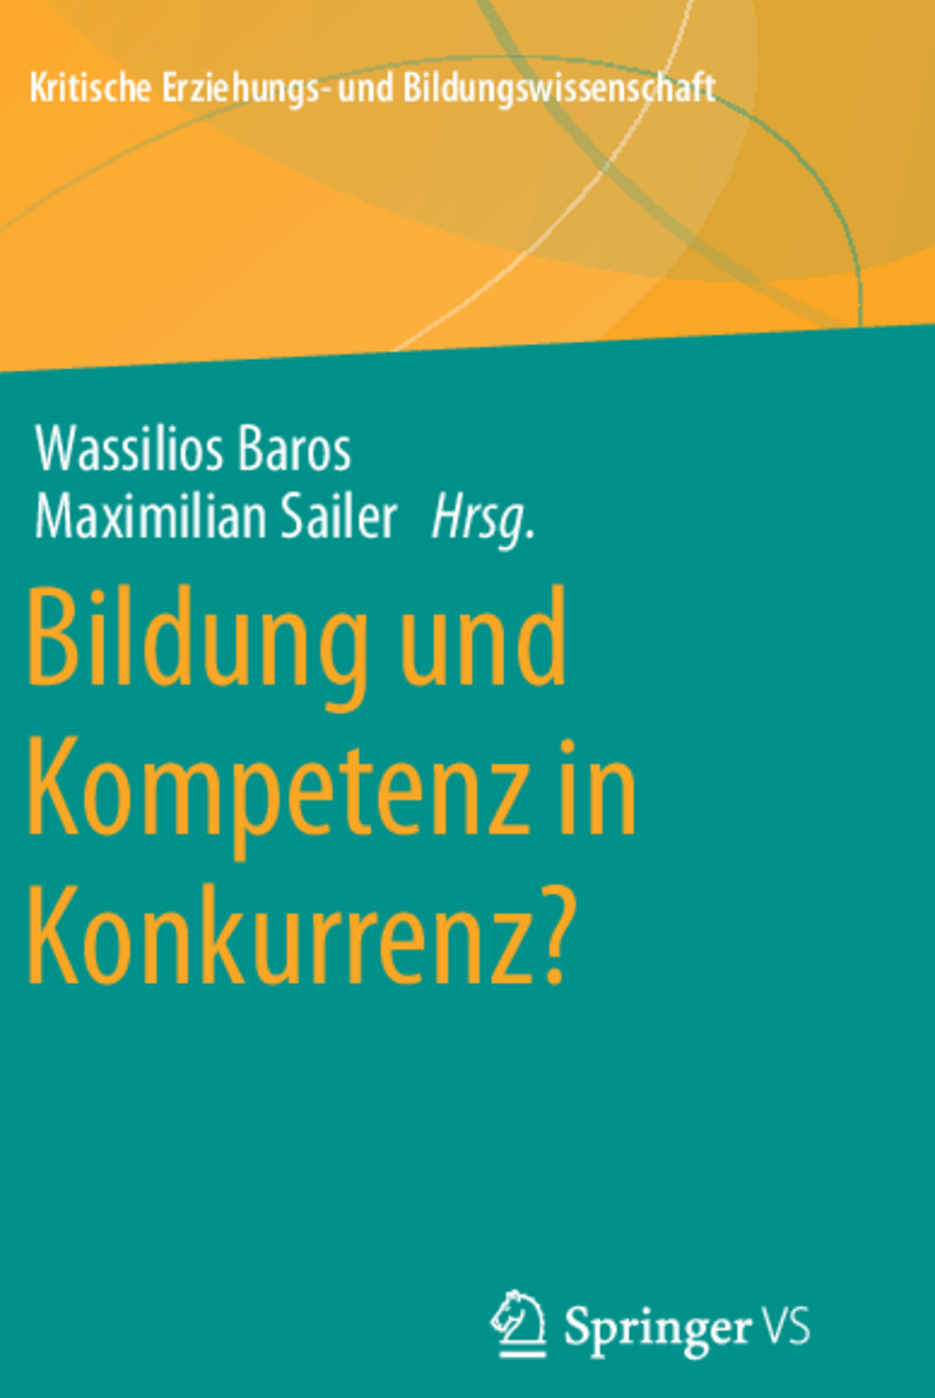 Buch: Bildung und Kompetenz in Konkurrenz?, Autoren: Wassilios Baros und Maximilian Sailer